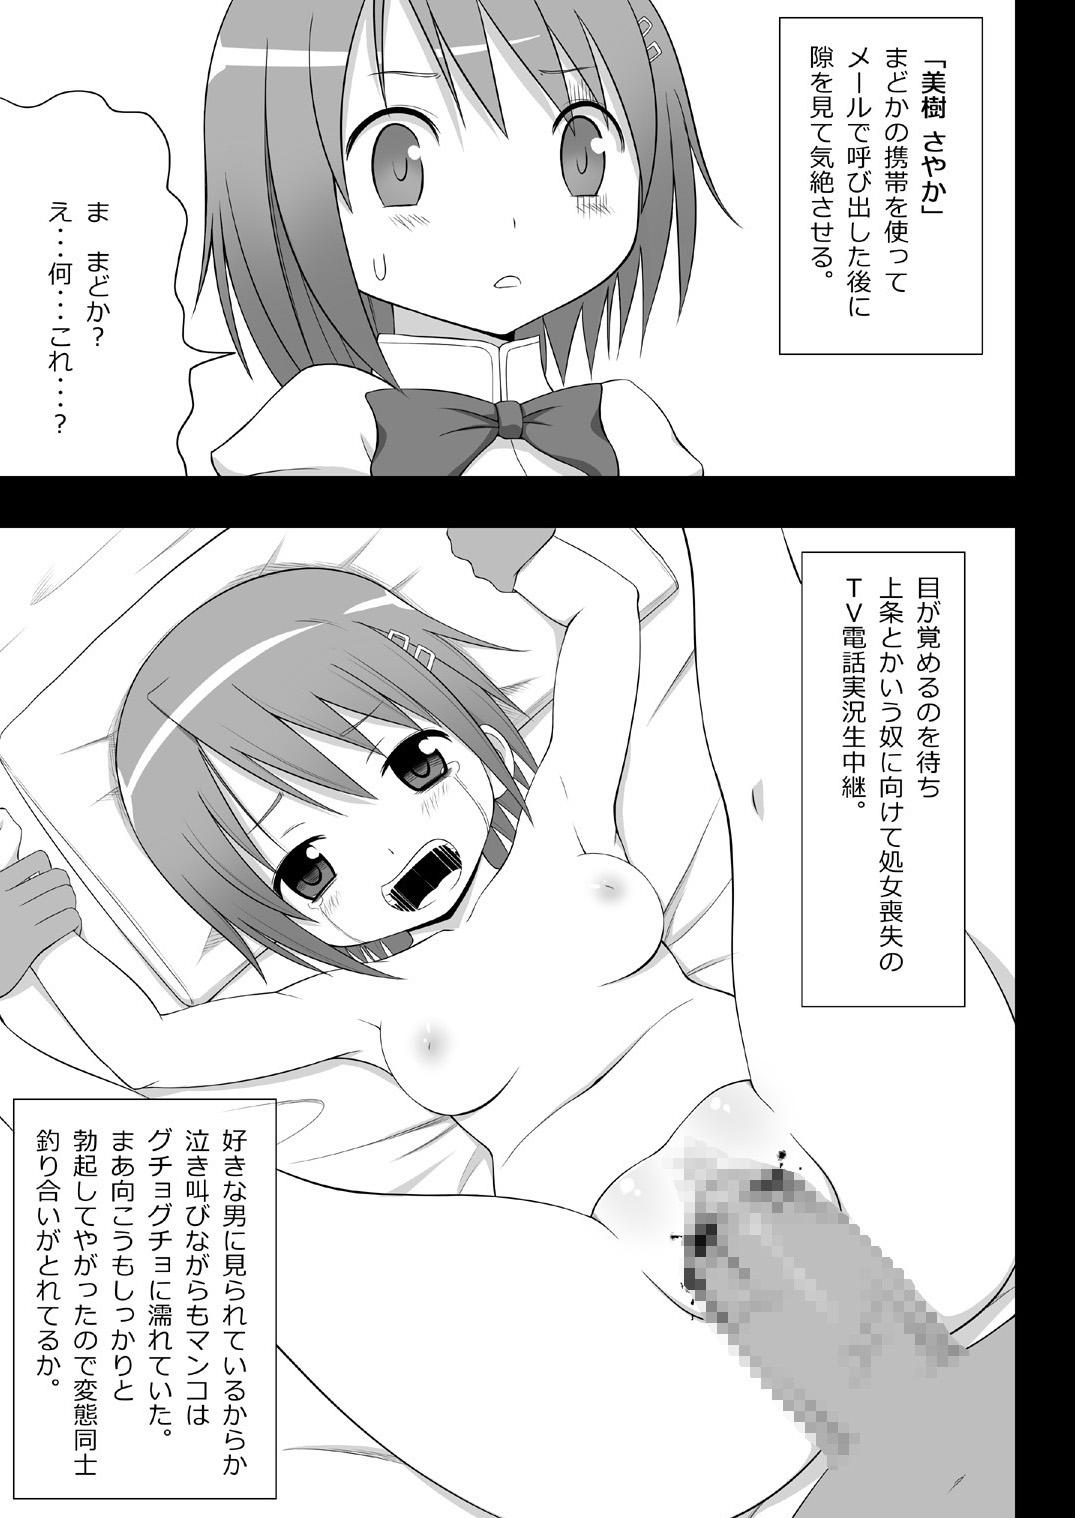 Transexual Jitsuroku Rape "Watashitachi ga Shoujo Janaku Natta hi" - Puella magi madoka magica Fingering - Page 4